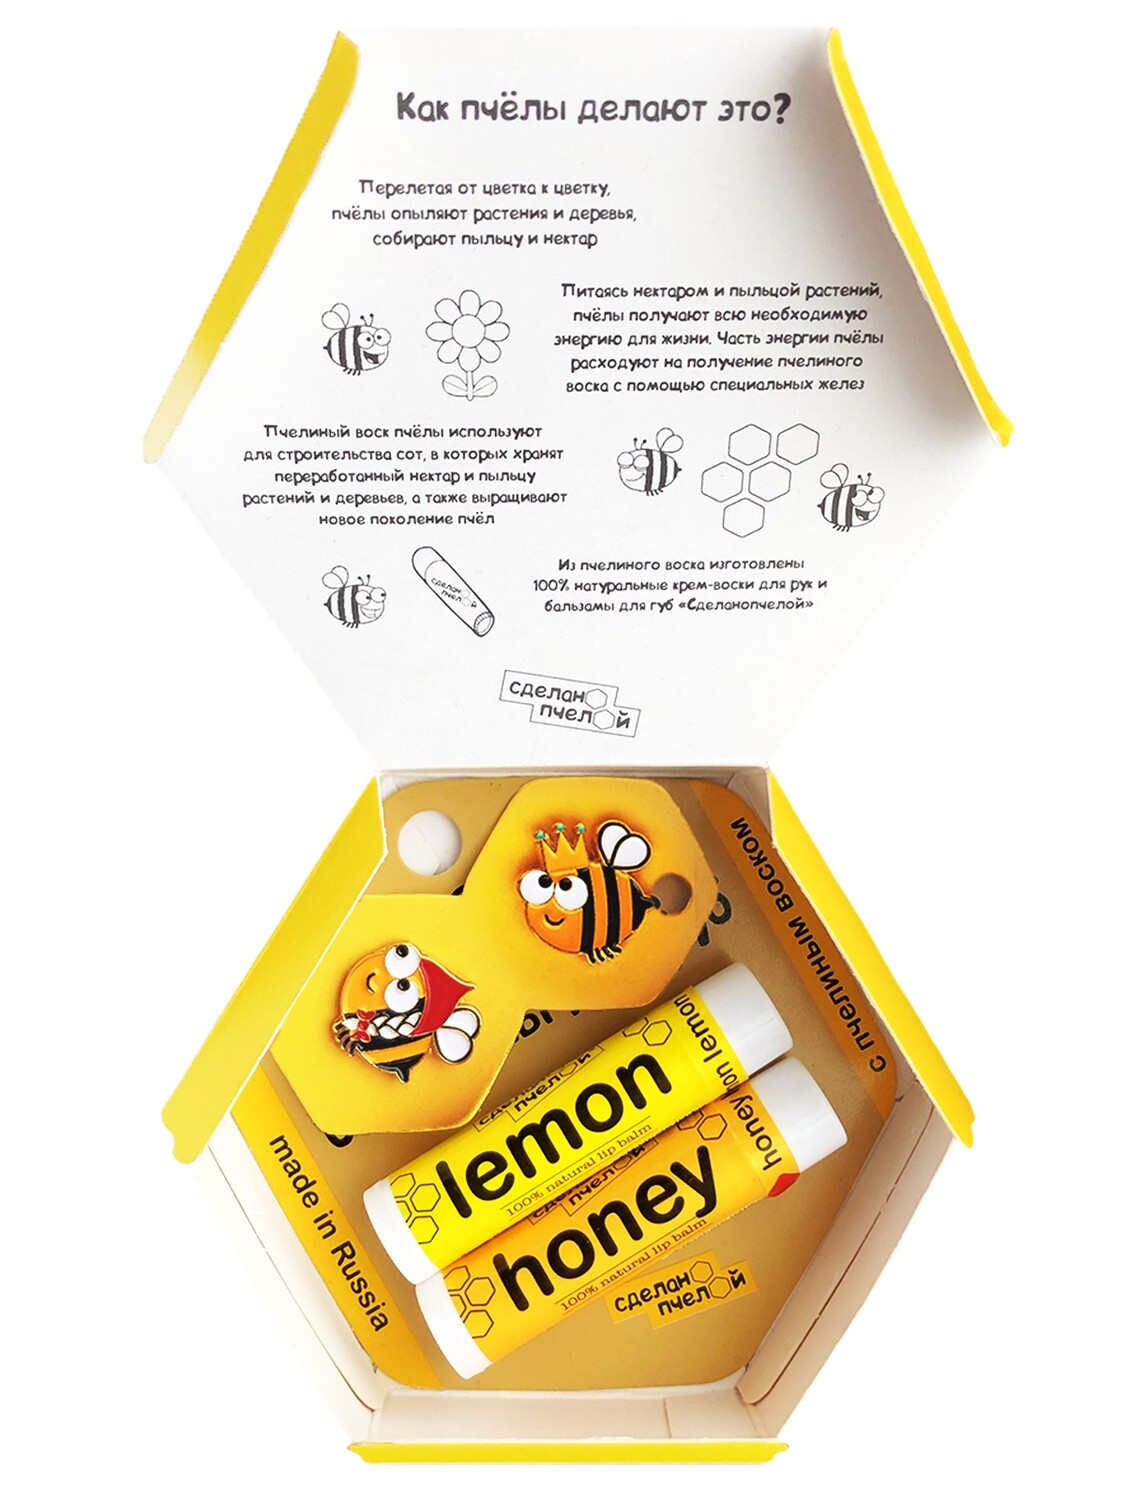 Подарочный набор "Lemon and Honey", 2 бальзама + 2 броши + коробка